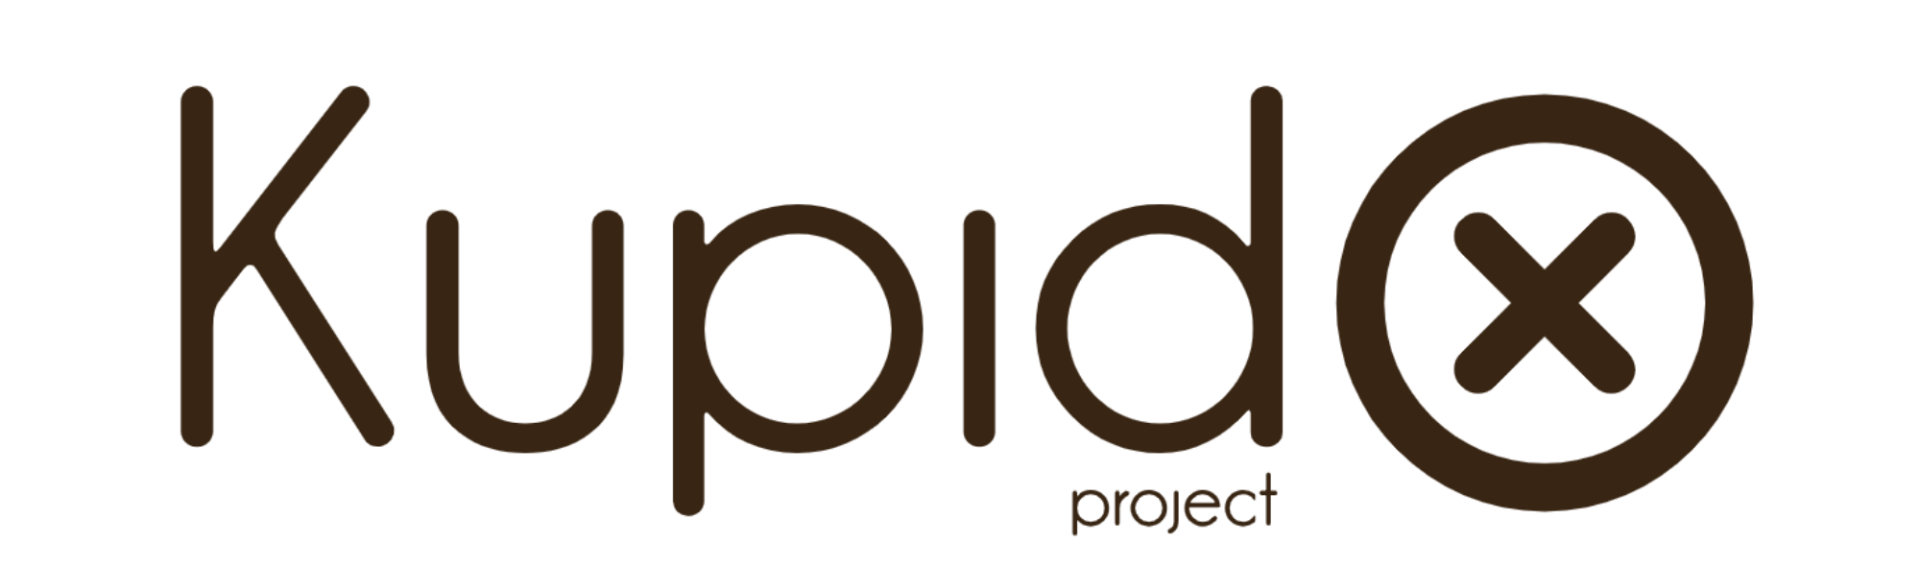 Un logotipo para una empresa llamada proyecto kupido.